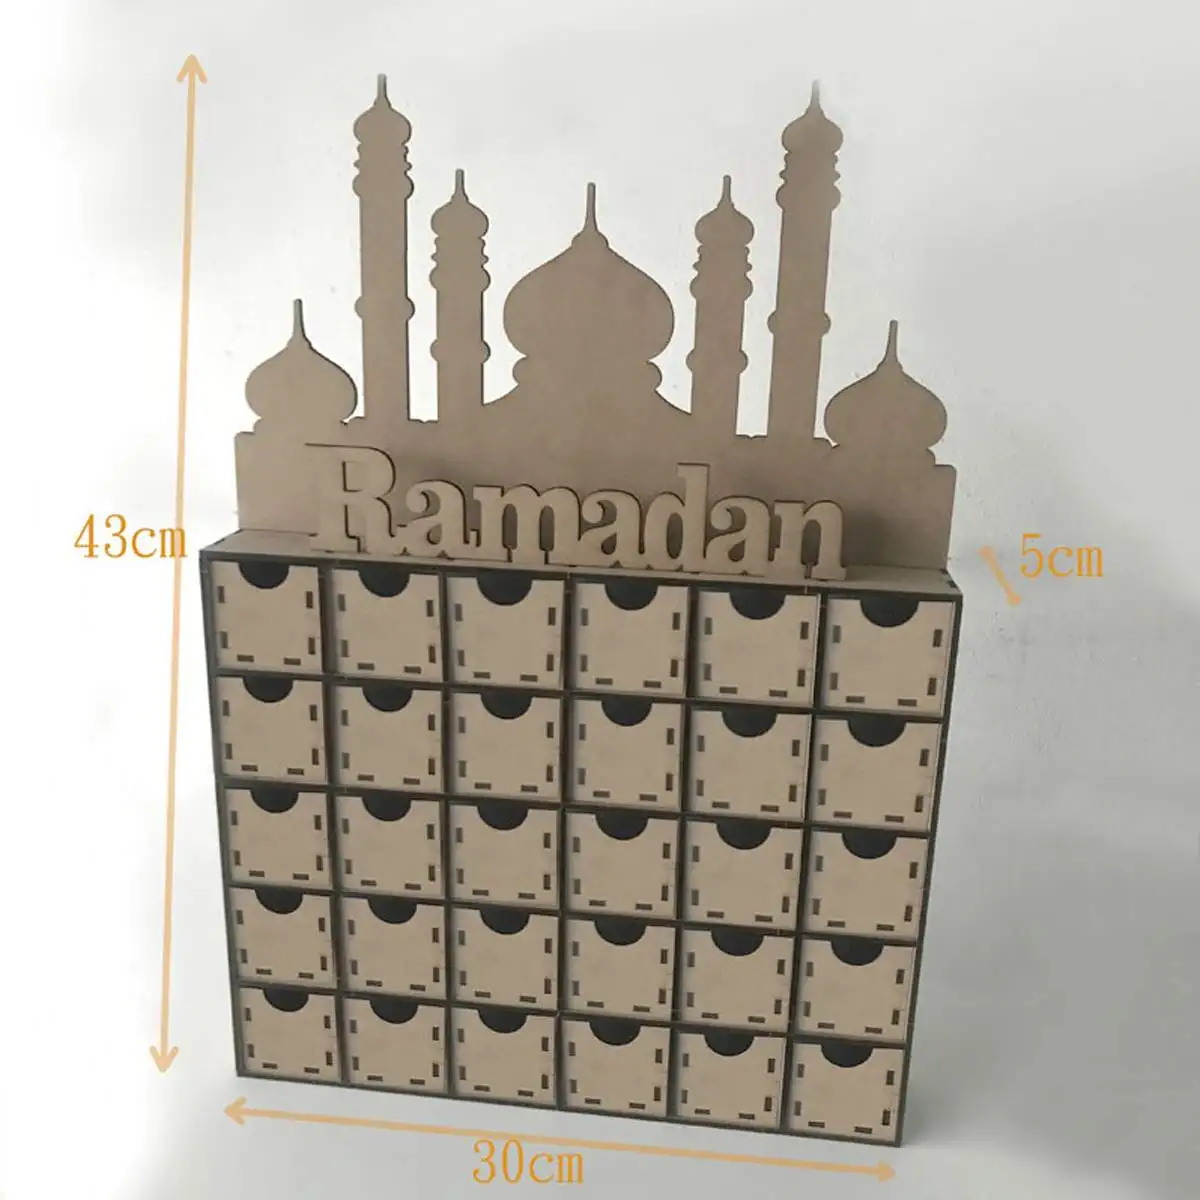 1 комплект Eid Mubarak Рамадан деревянные домашние вечерние декоративное украшение доска для сообщений календарь хранения Мусульманский Исламский подарок стол DIY